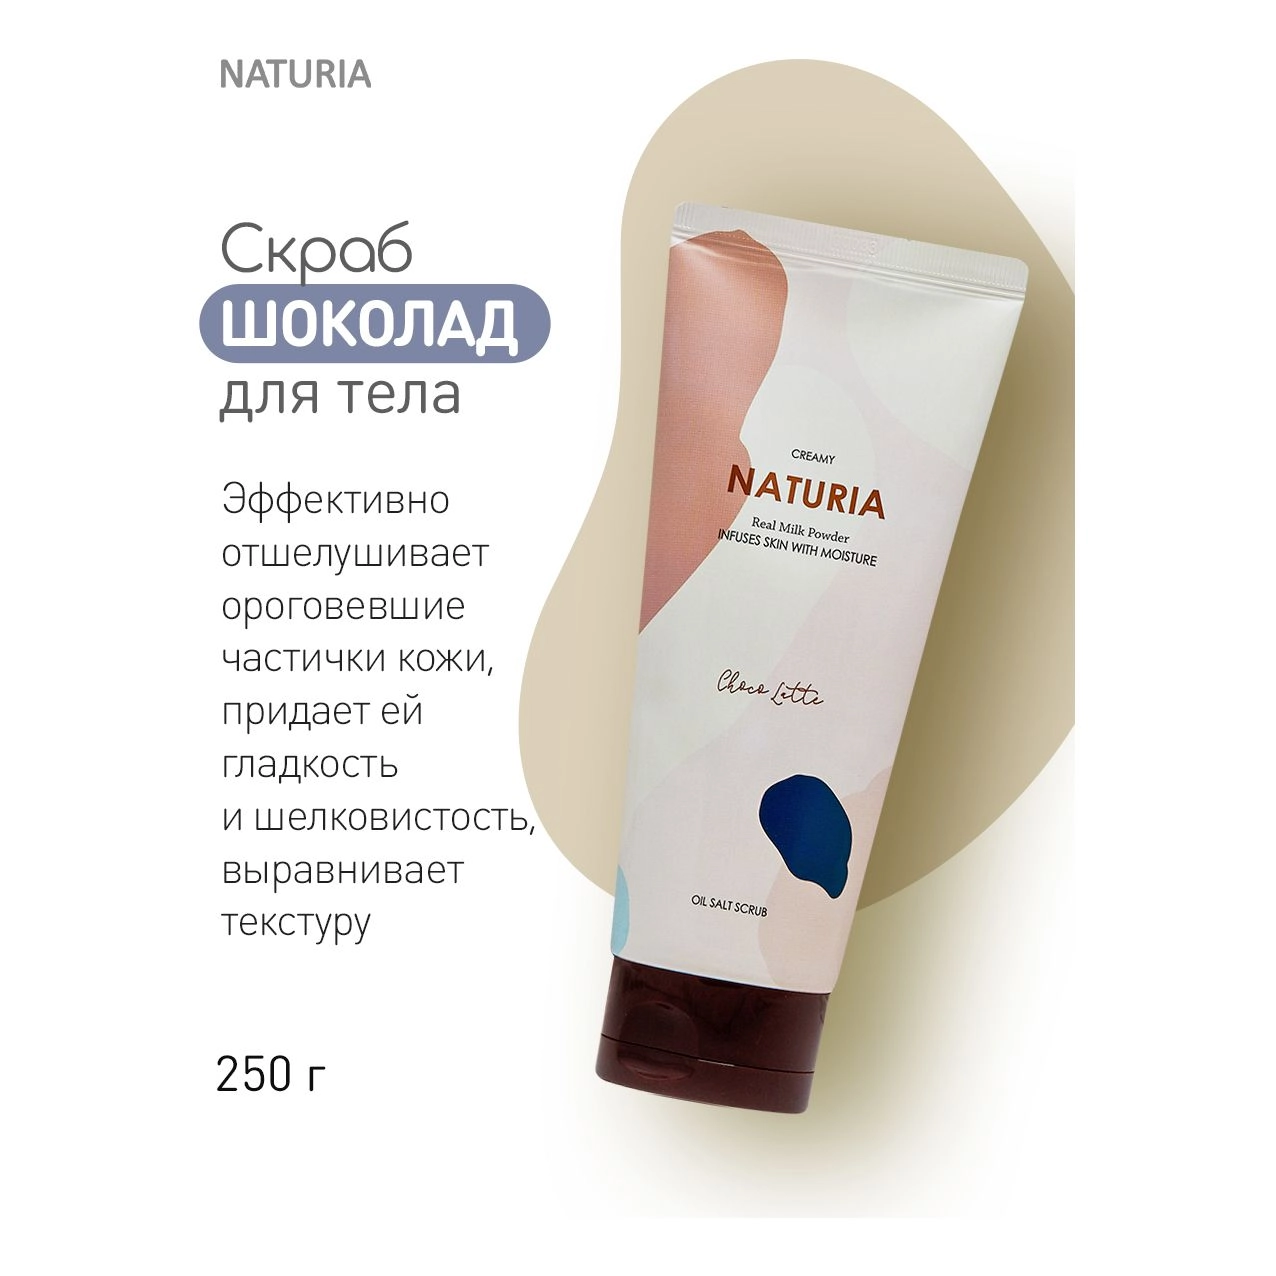 Naturia Creamy Oil Salt Scrub Choco Latte Скраб для тела с ароматом шоколада 250 г - фото N4